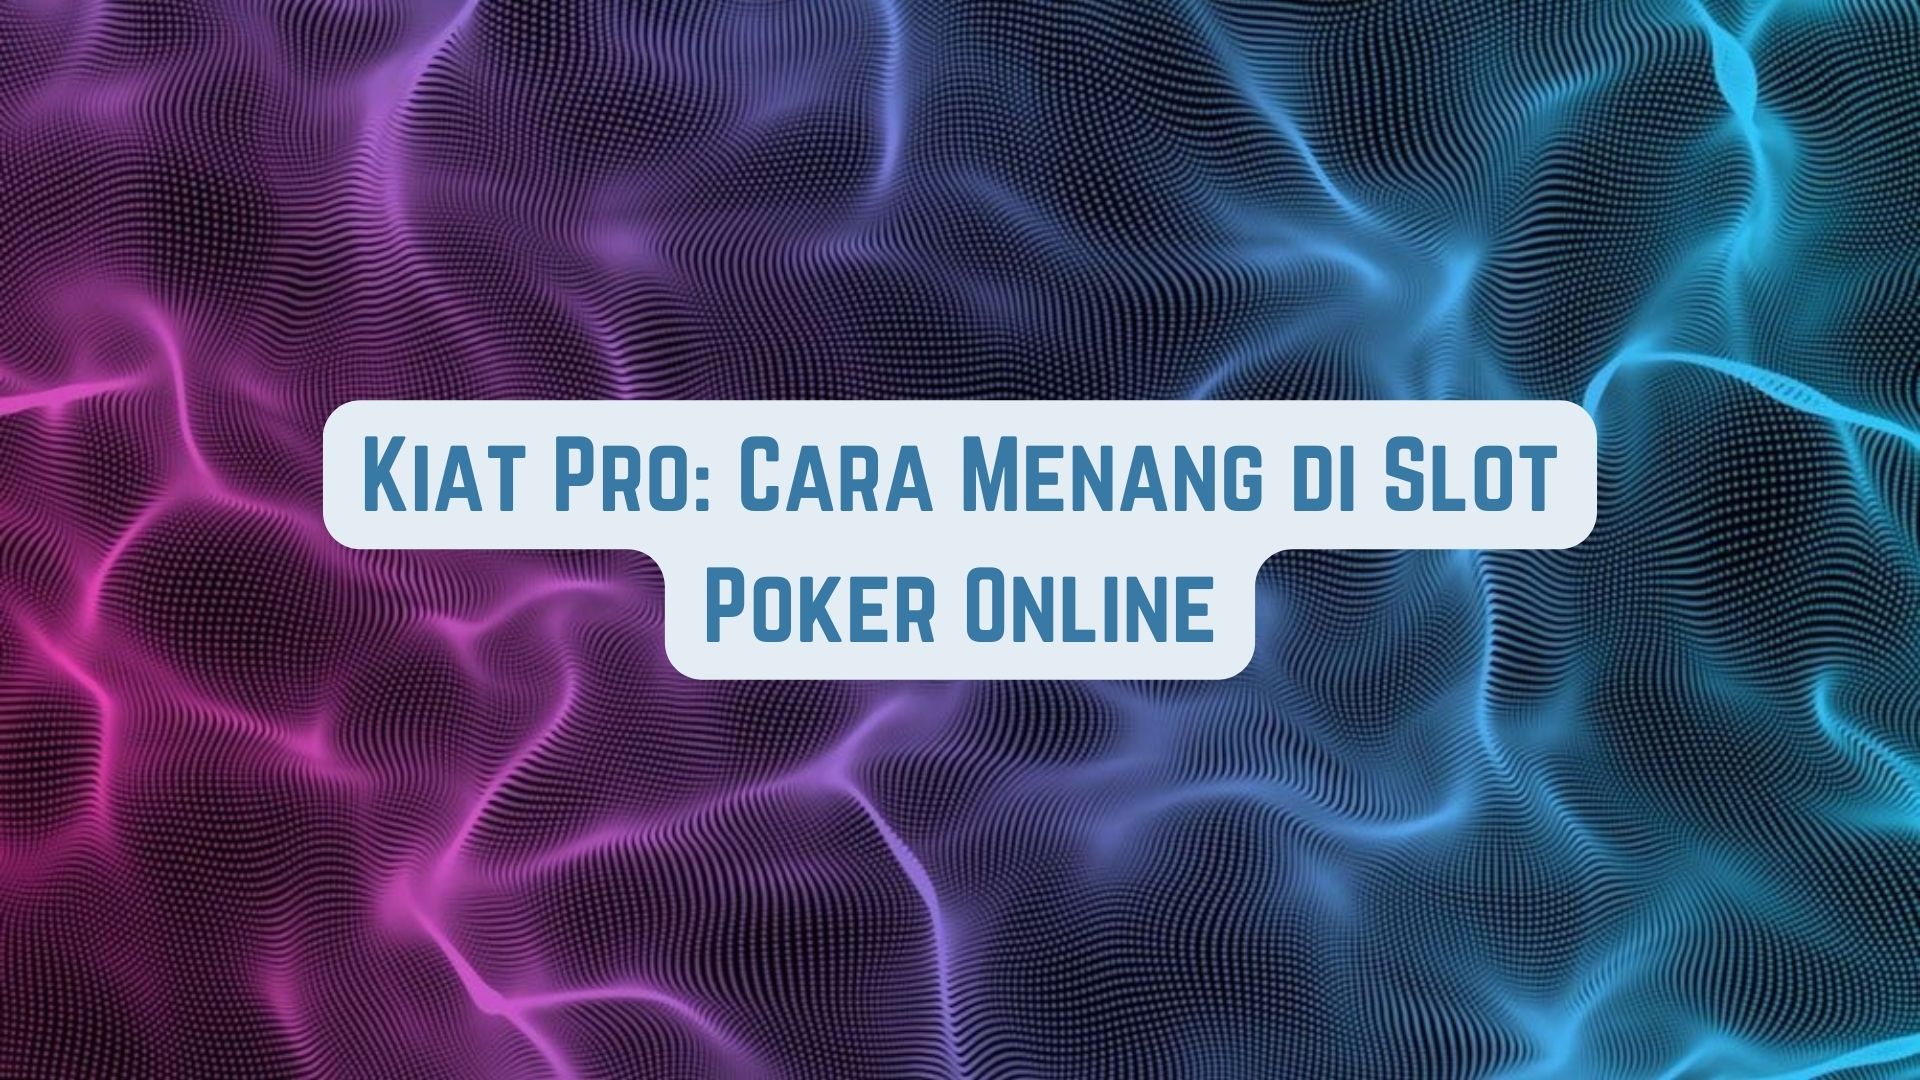 Kiat Pro: Cara Menang di Game Poker Online